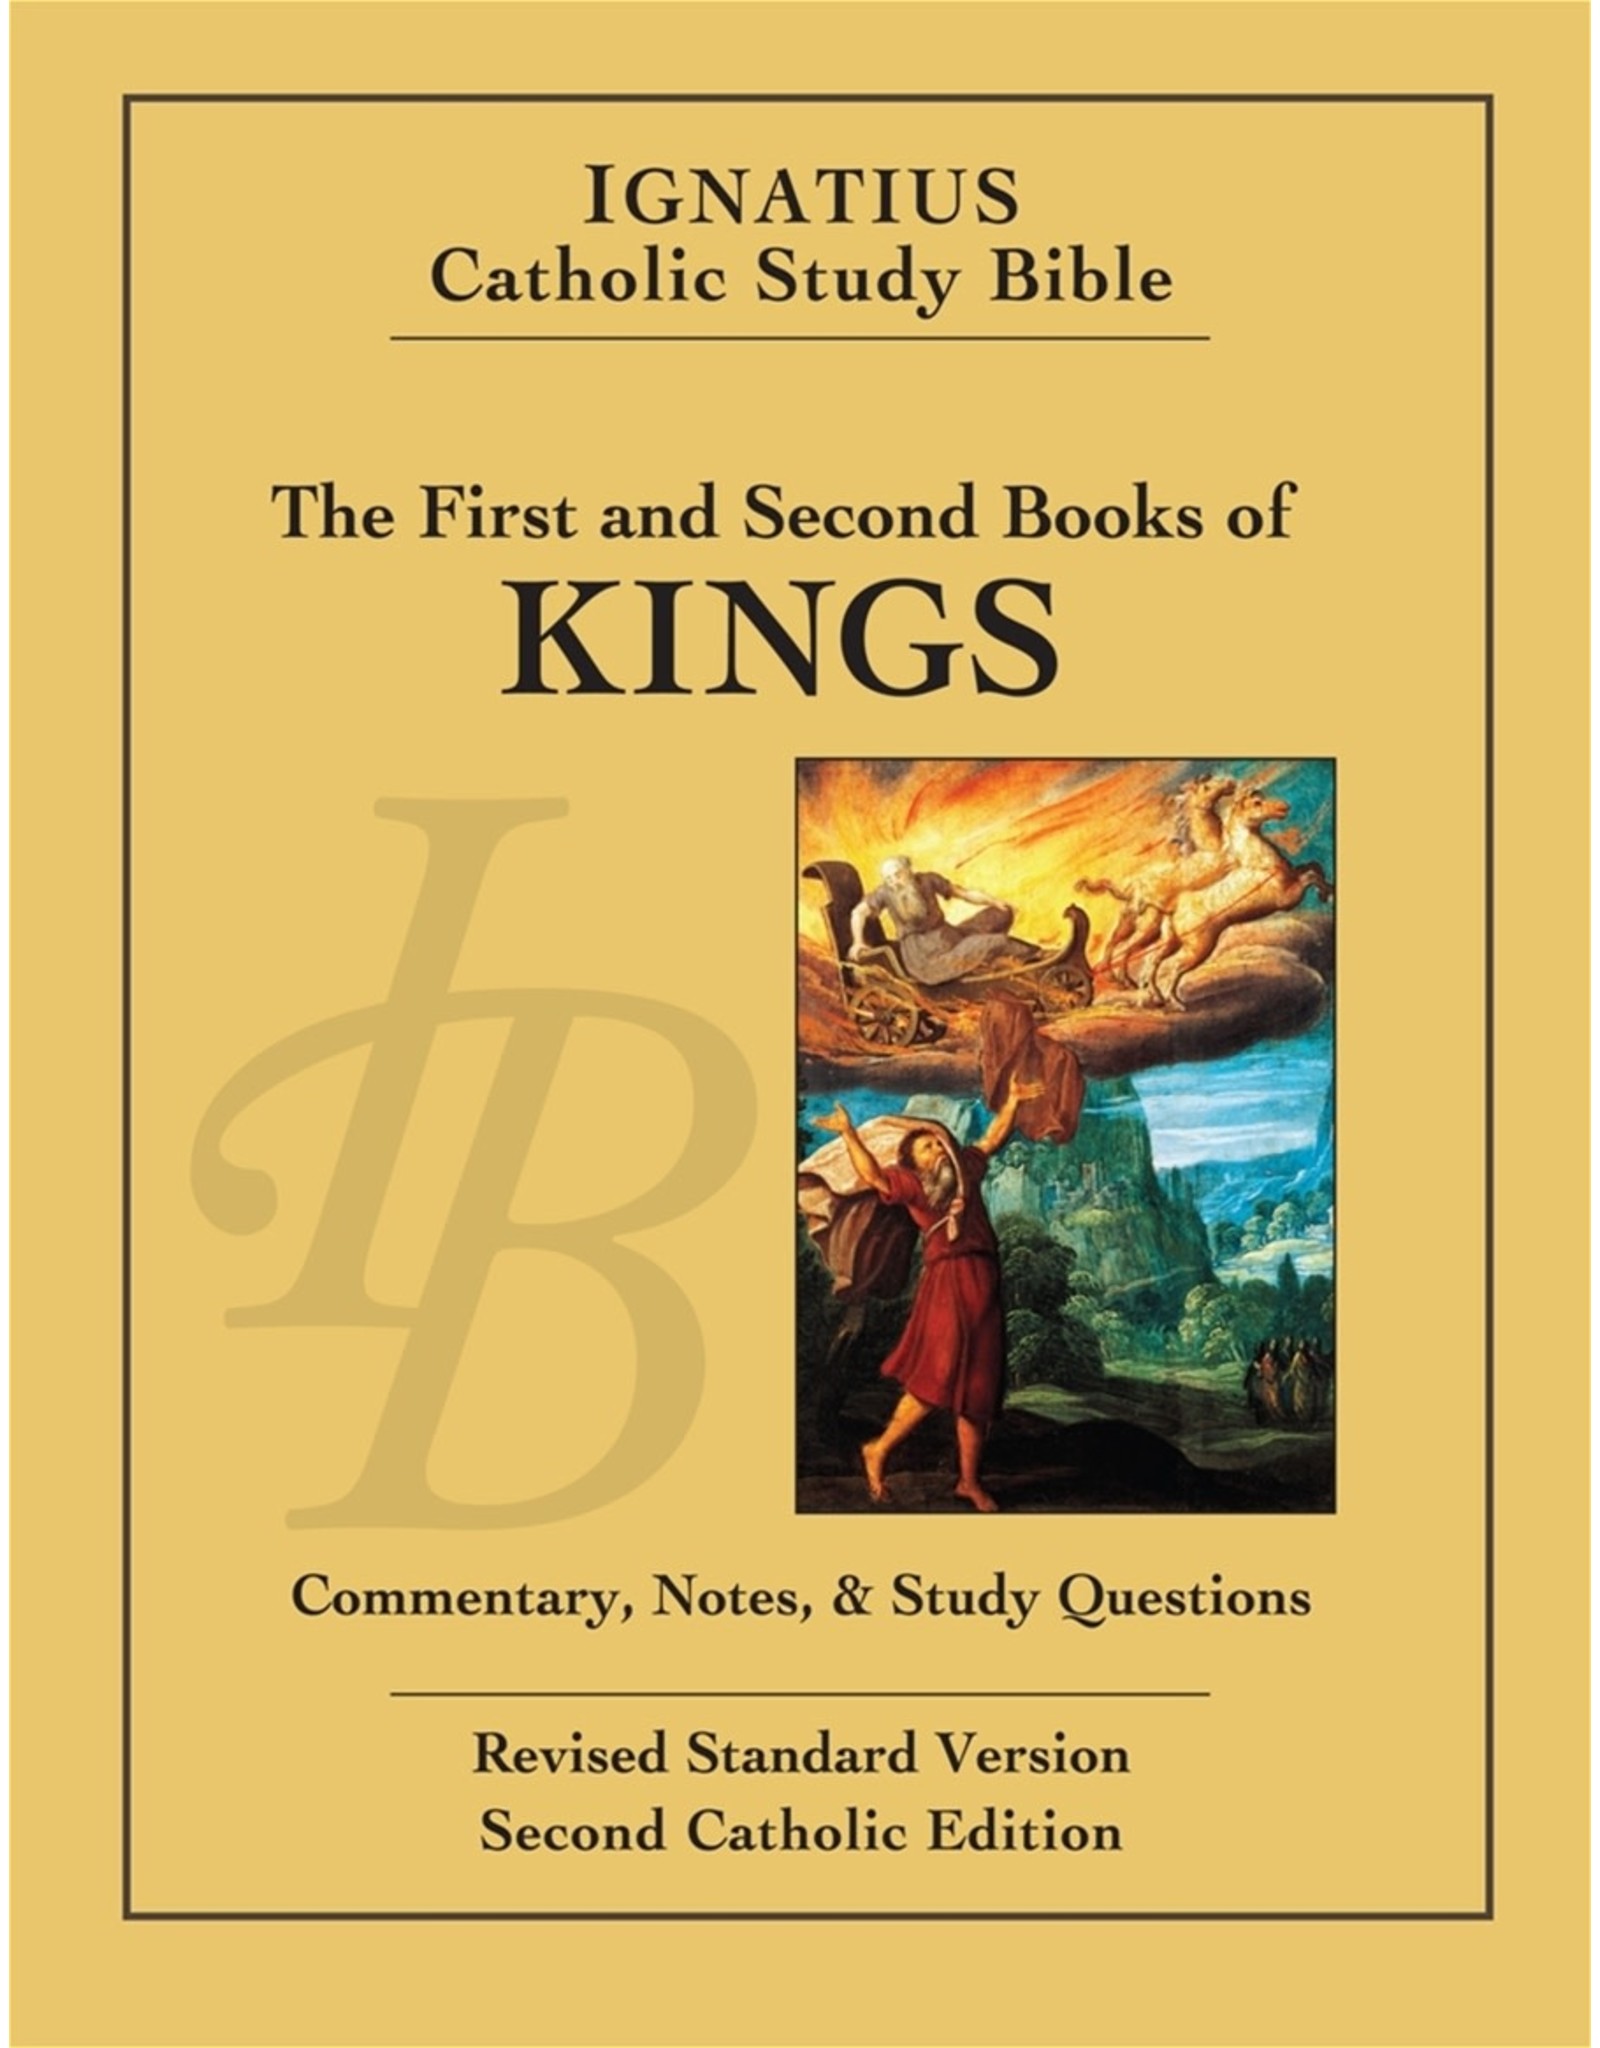 RSV Ignatius Catholic Study Bible-Kings 1&2